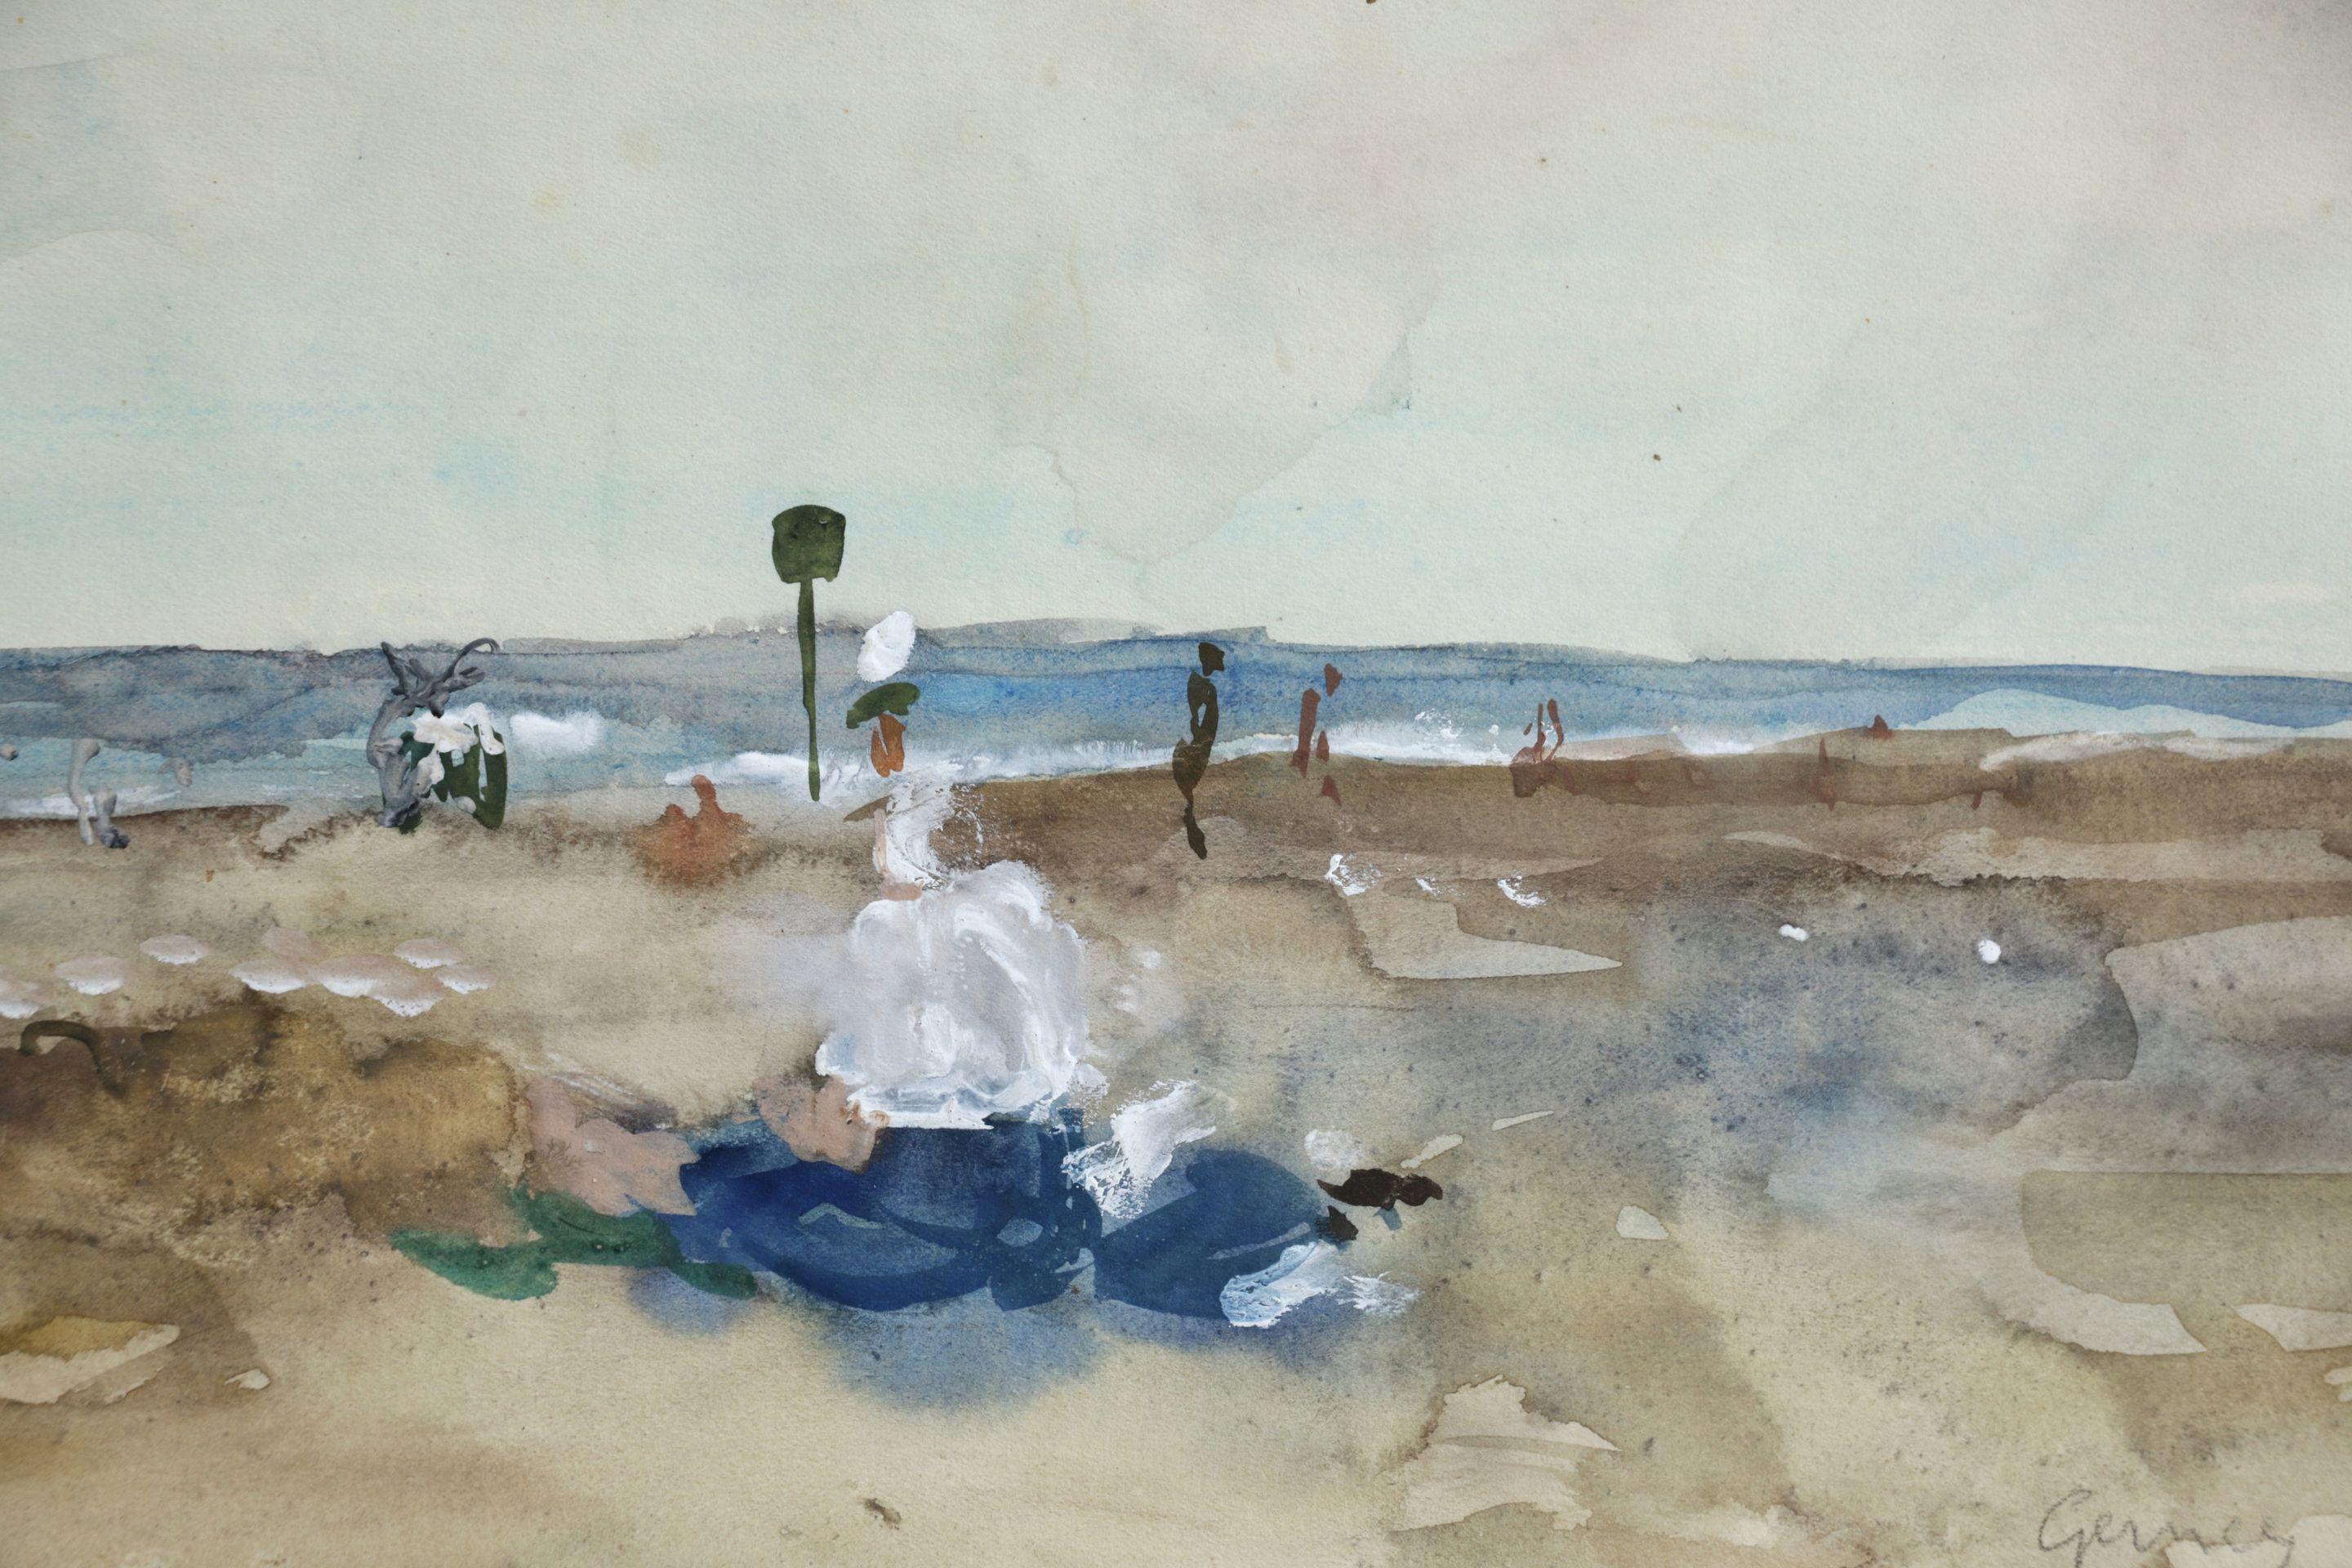 Elegantes sur la Plage - 20th Century Watercolor, Figures in Seascape by Gernez - Art by Paul-Élie Gernez